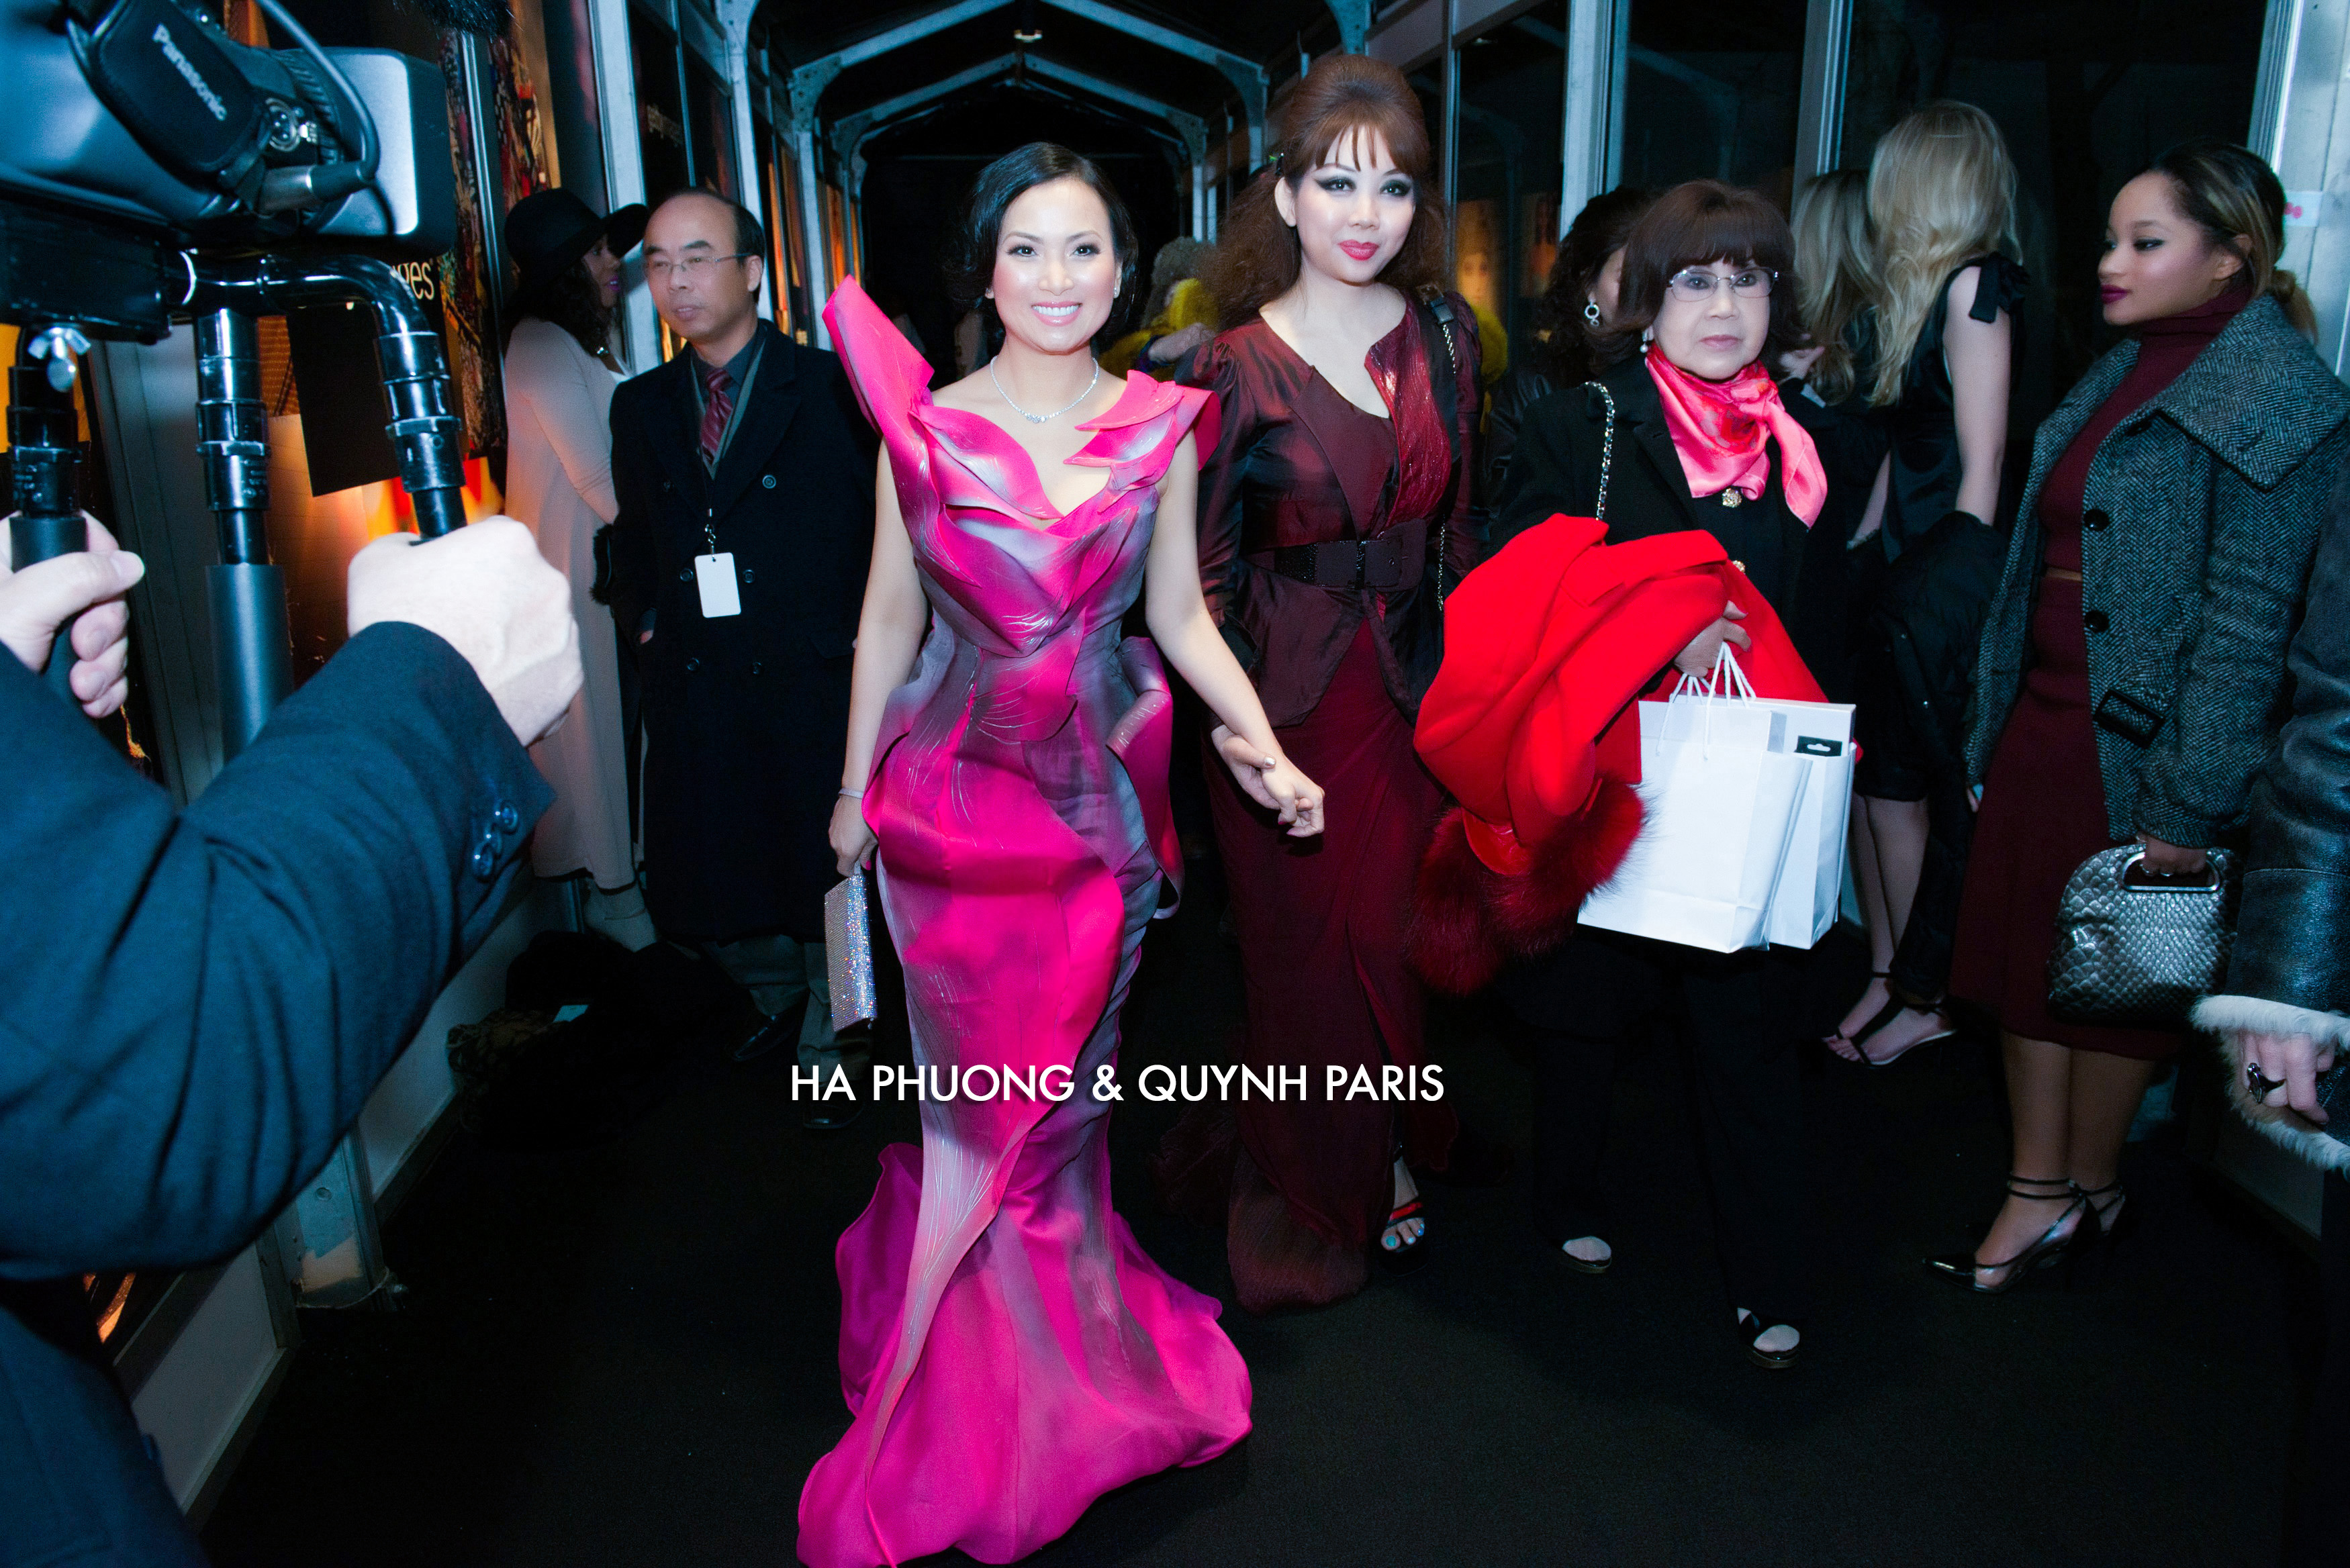 Ha Phuong & Quynh Paris at NY Fashion week 2015. www.haphuongworld.com www.haphuong.global haphuongfanpage